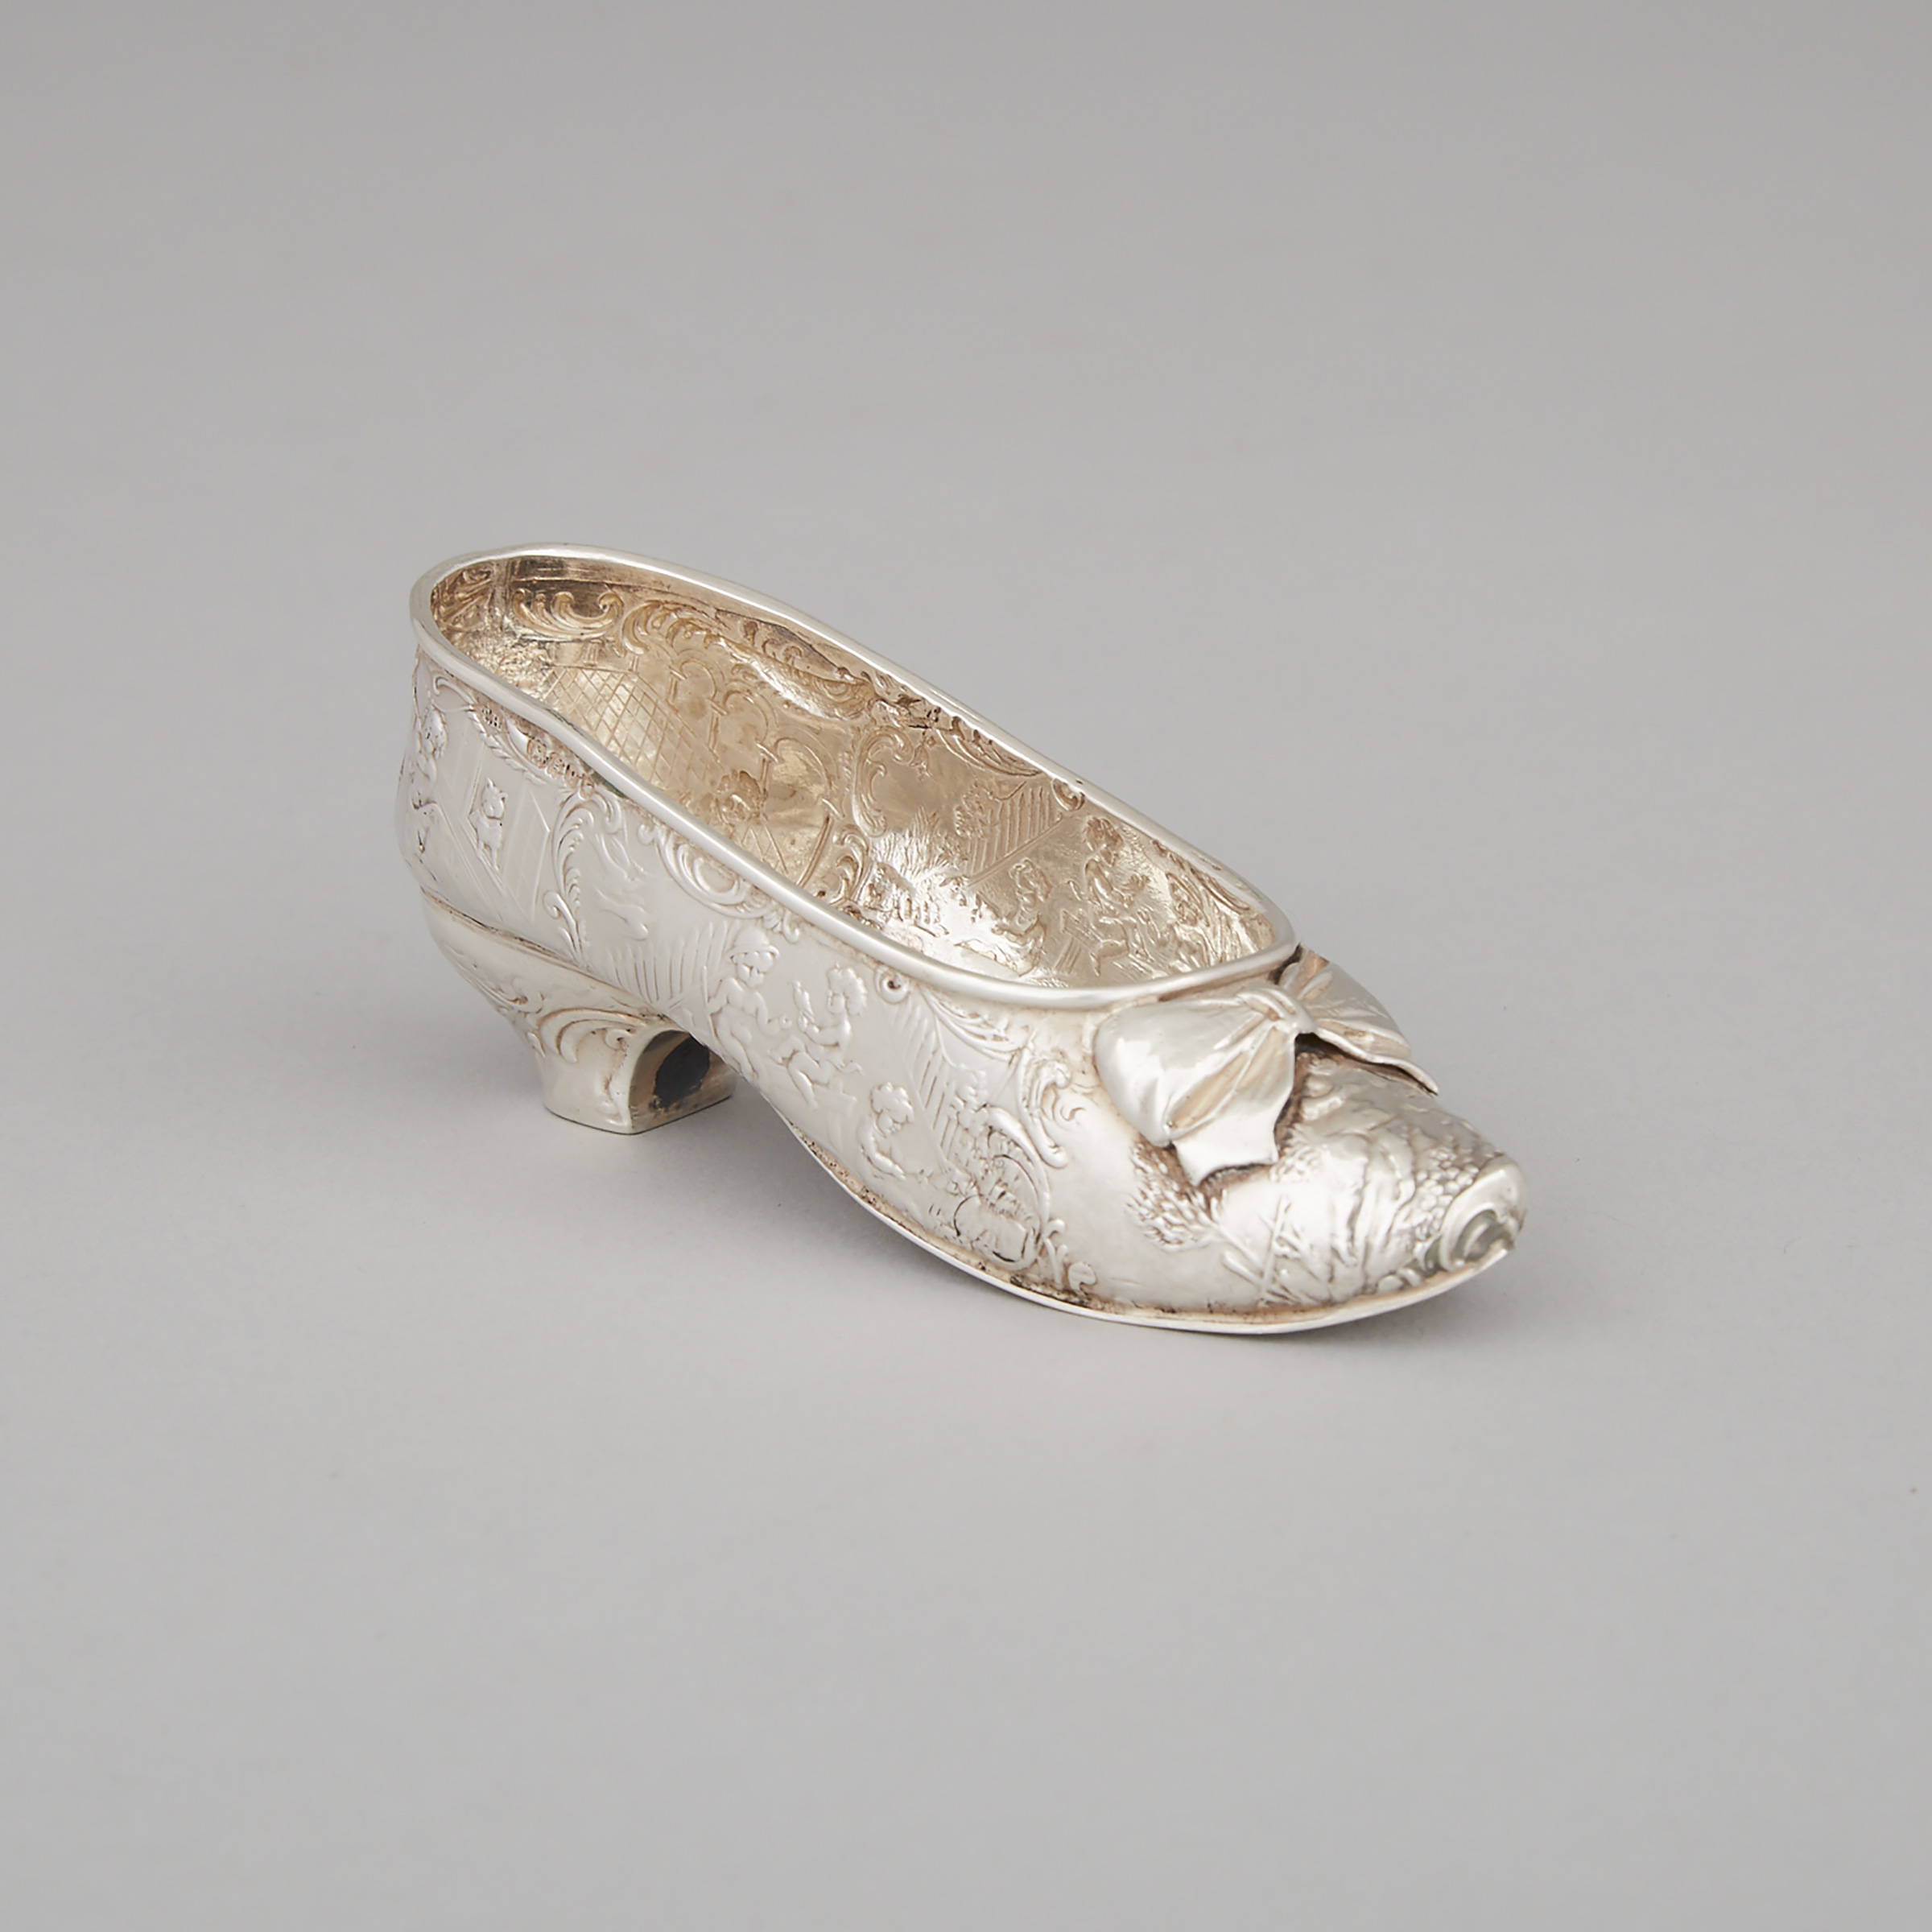 German Silver Novelty Shoe, Karl Kurz, Kesselstadt, c.1900